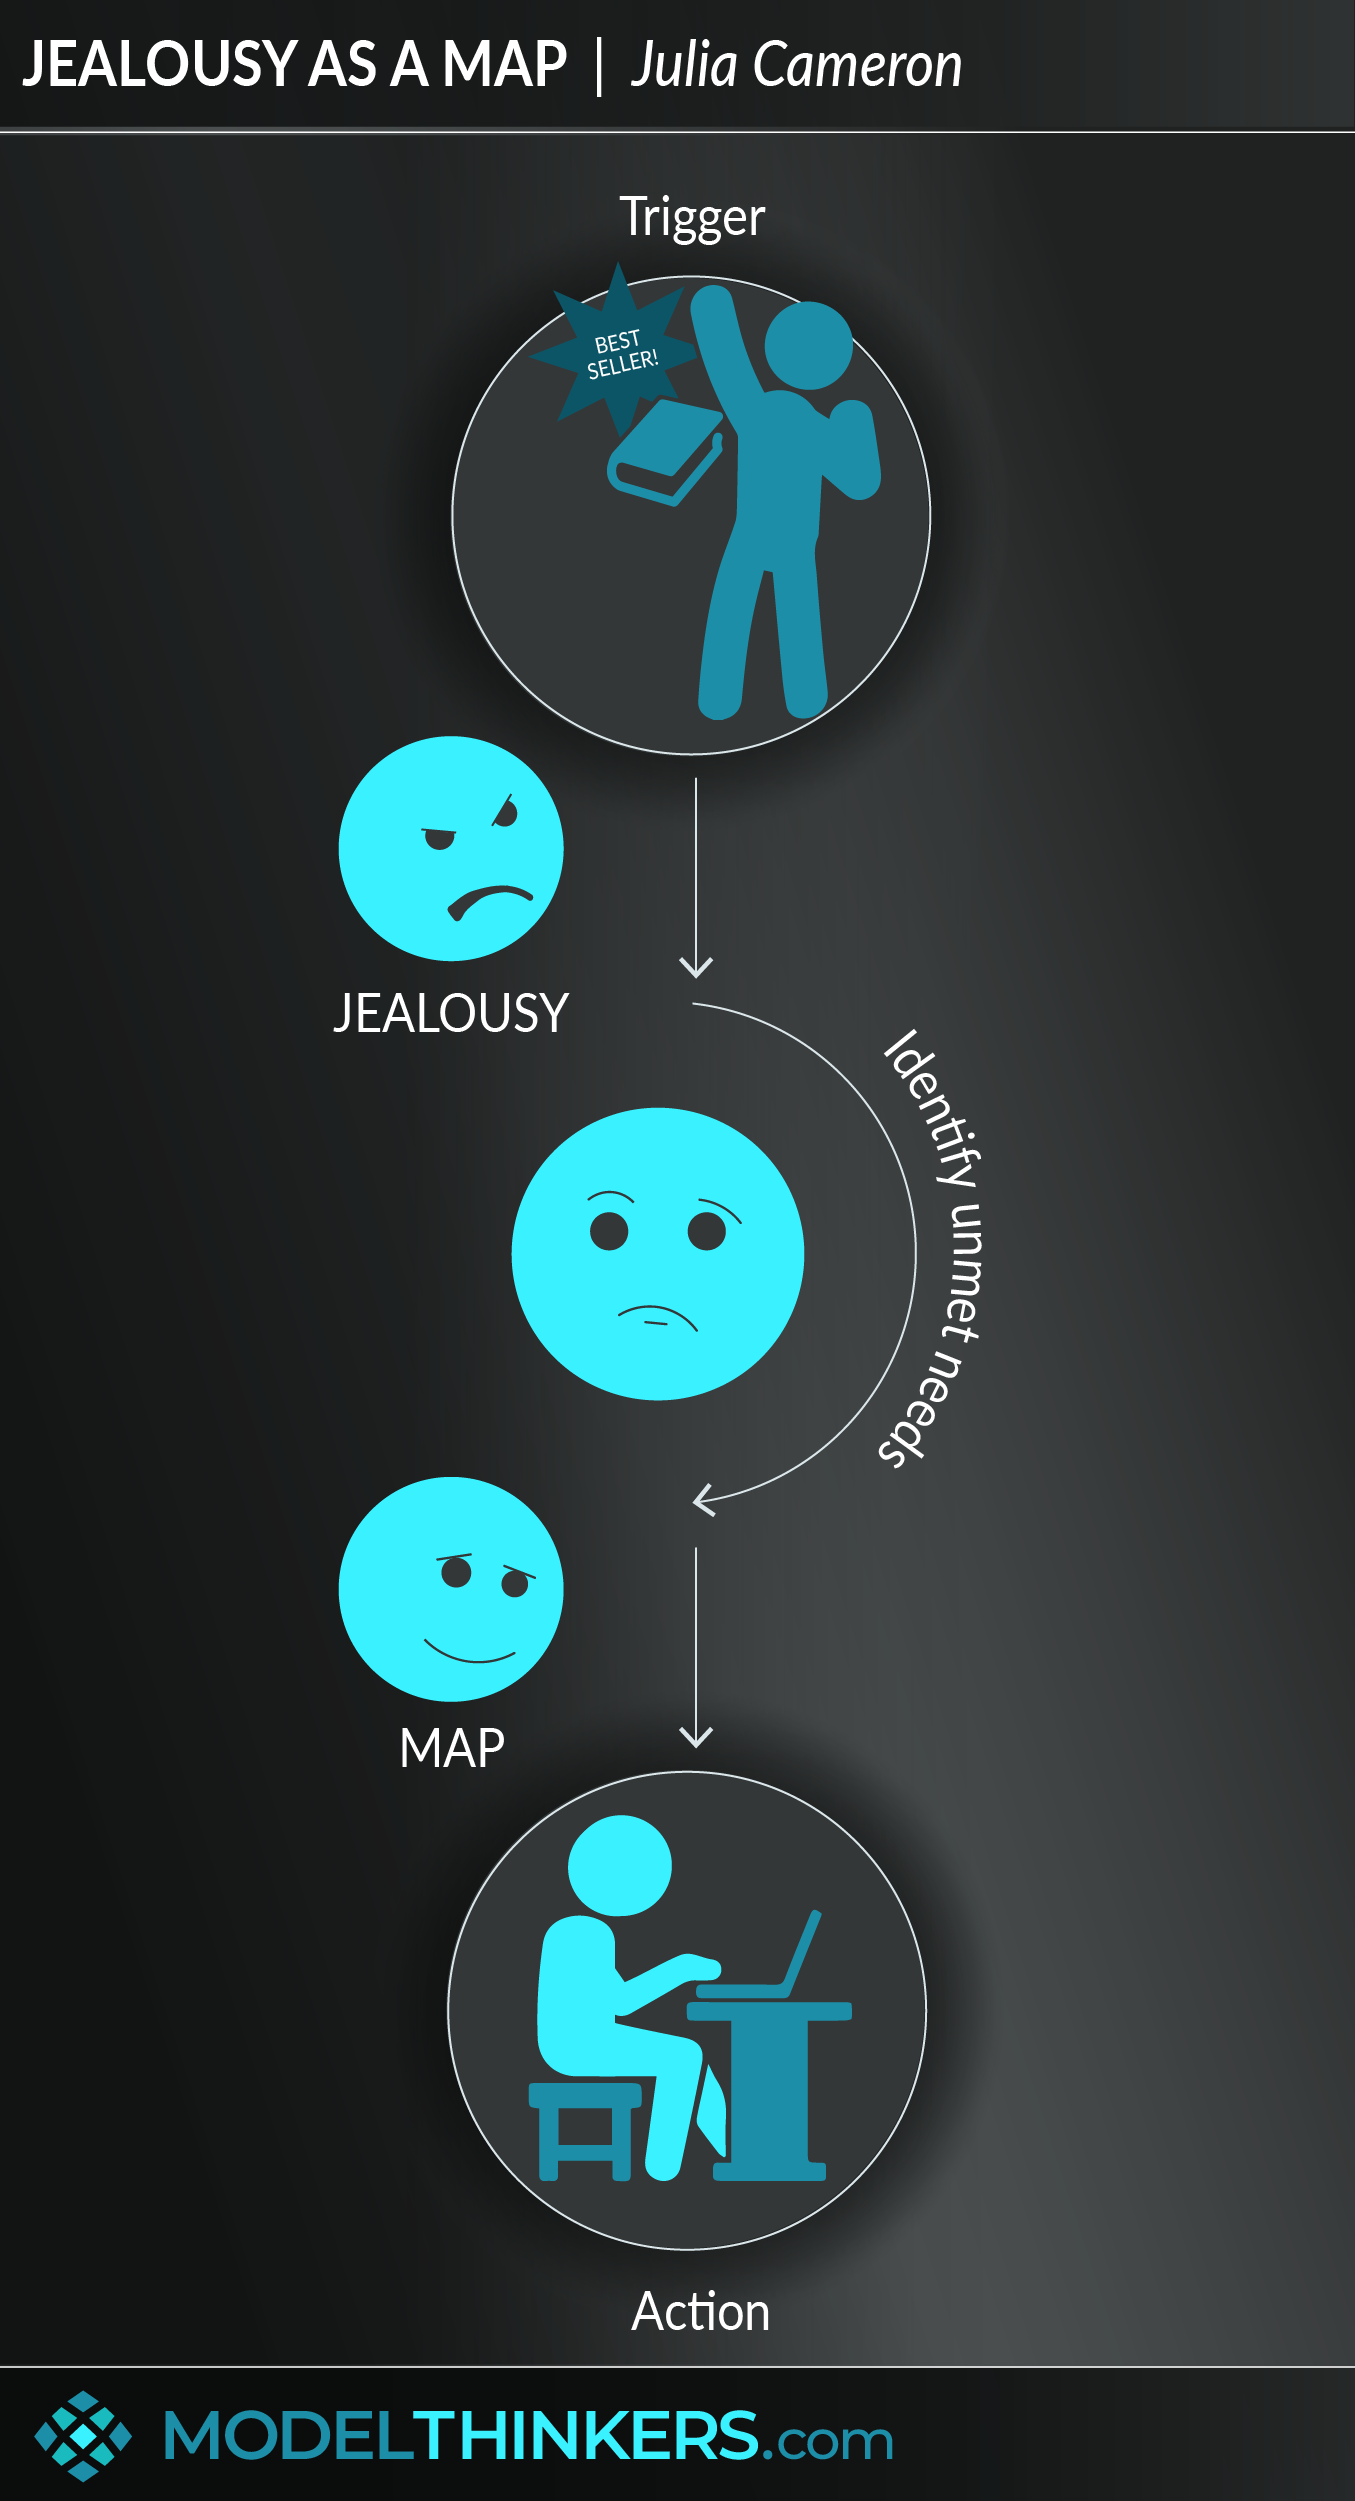 Jealousy as a Map